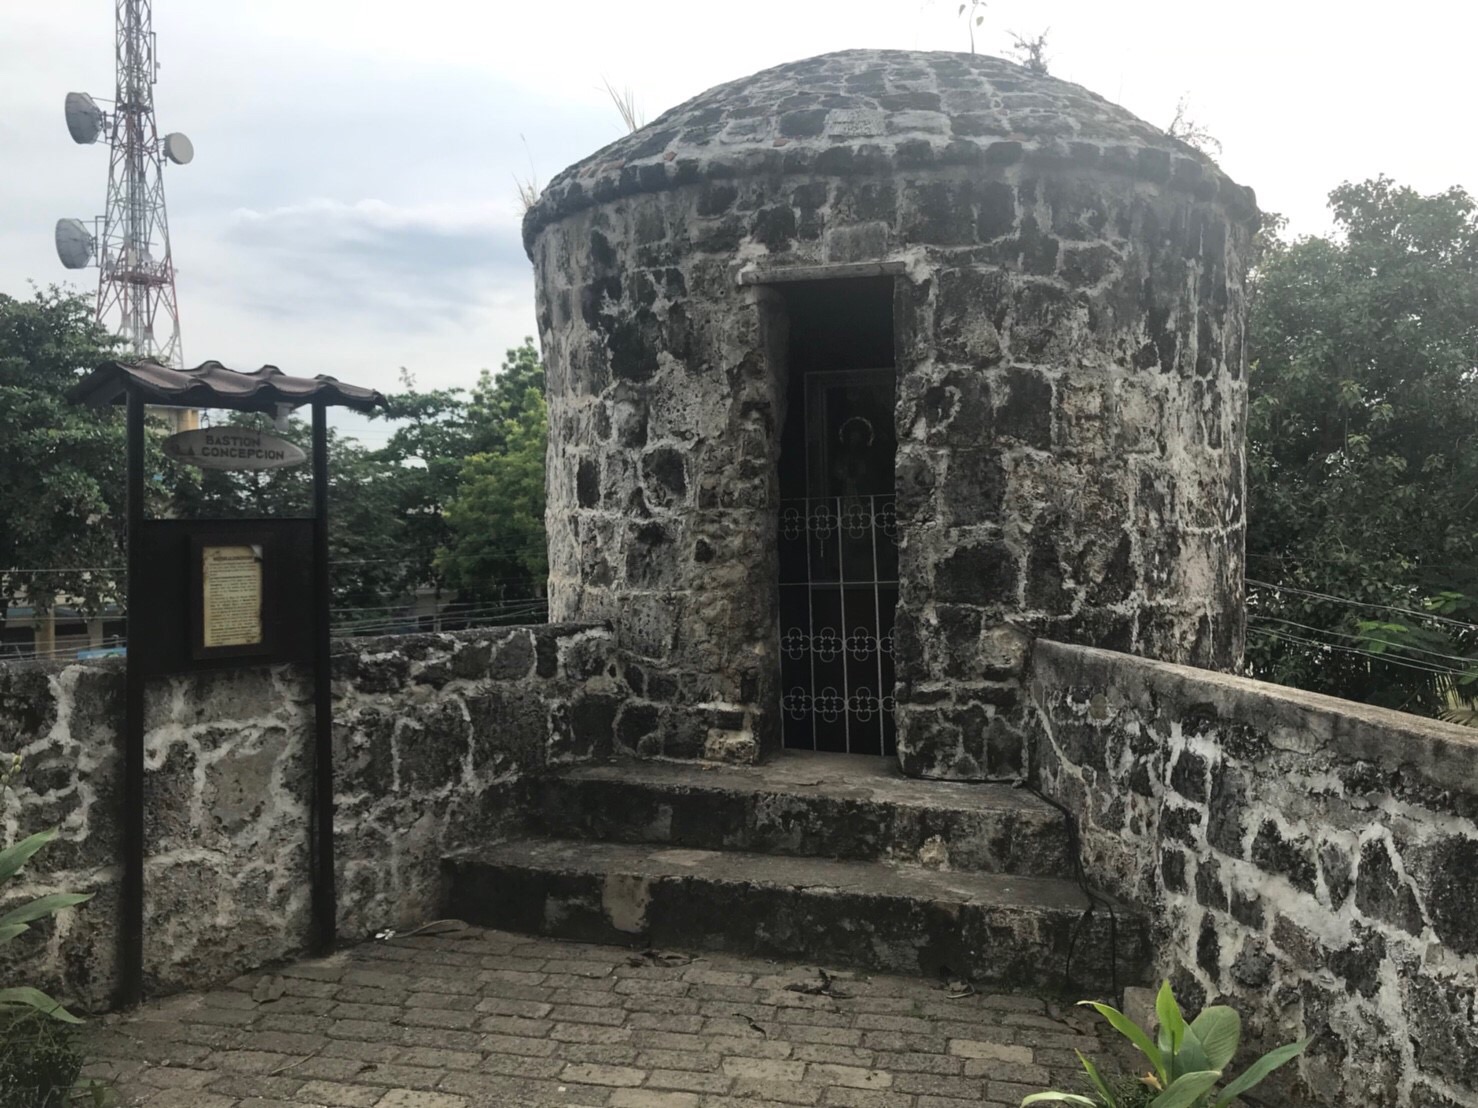 セブ島の観光名所・サンペドロ要塞